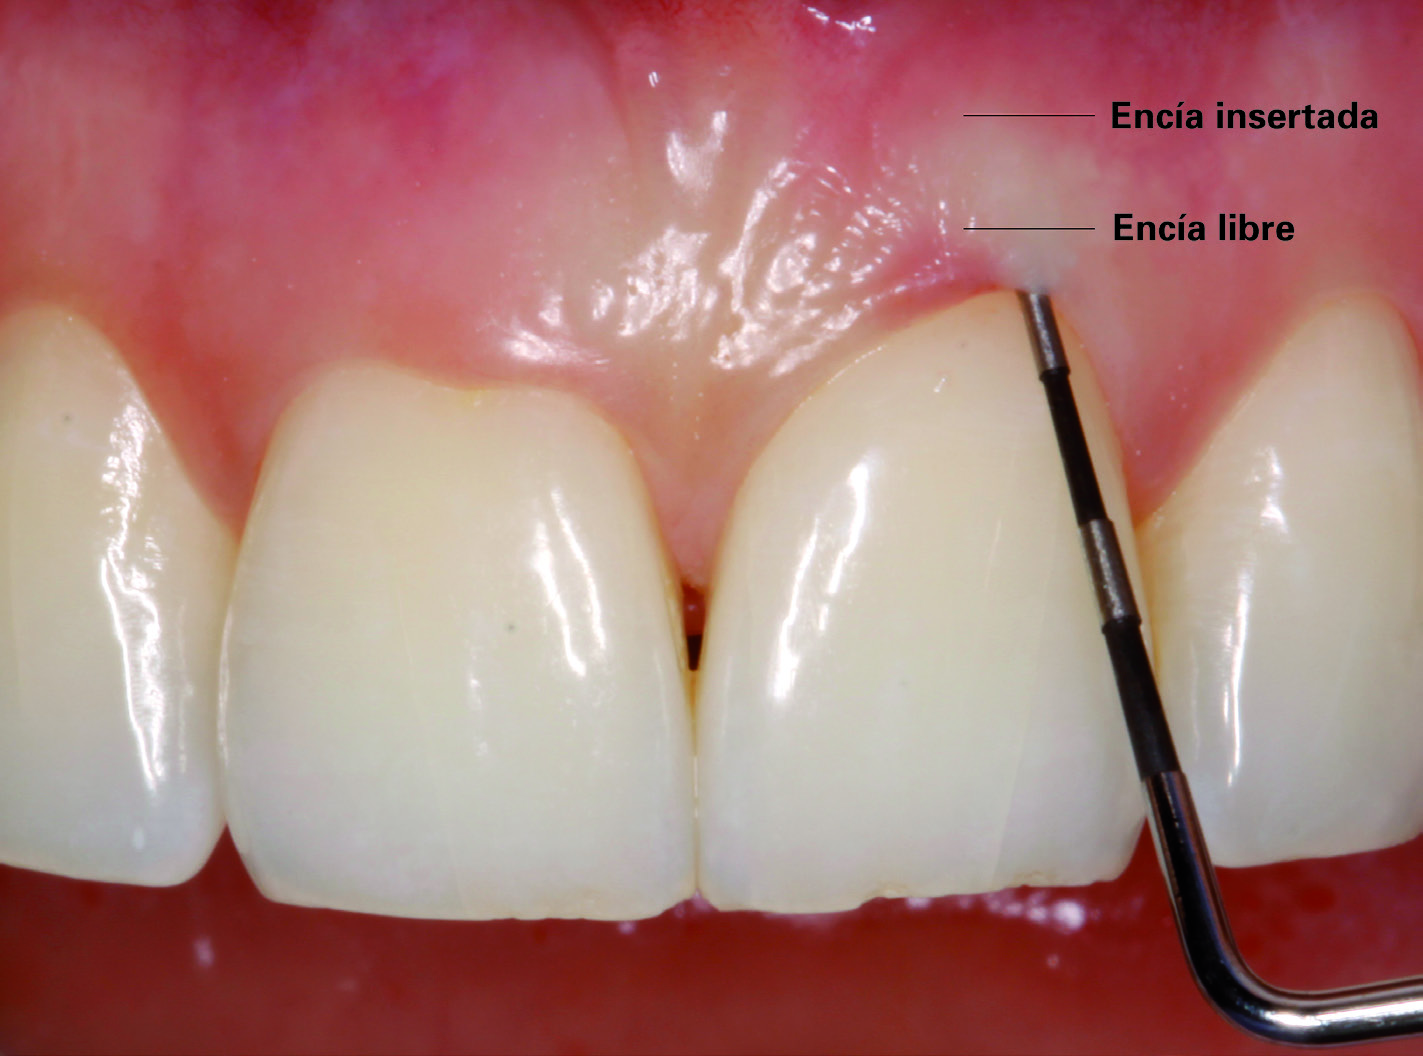 Reconocimiento de la enfermedad periodontal 91 no se presente de forma espontánea y ayuda a detectar la presencia de exudado gingival (permite además detectar la ausencia de pérdida de inserción y